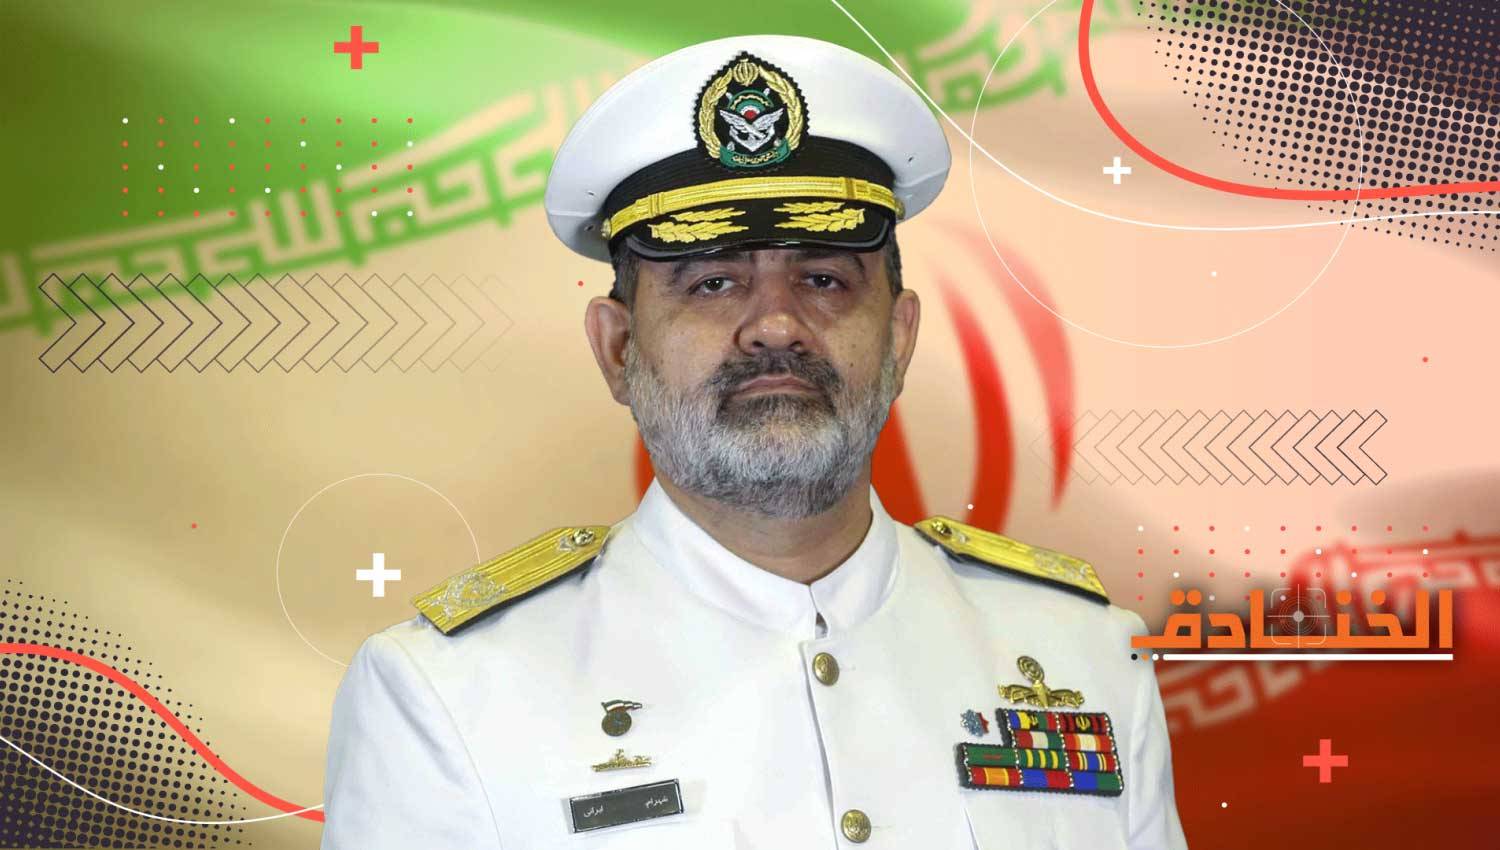 الأدميرال شهرام إيراني: قائد القوة البحرية في الجيش الإيراني